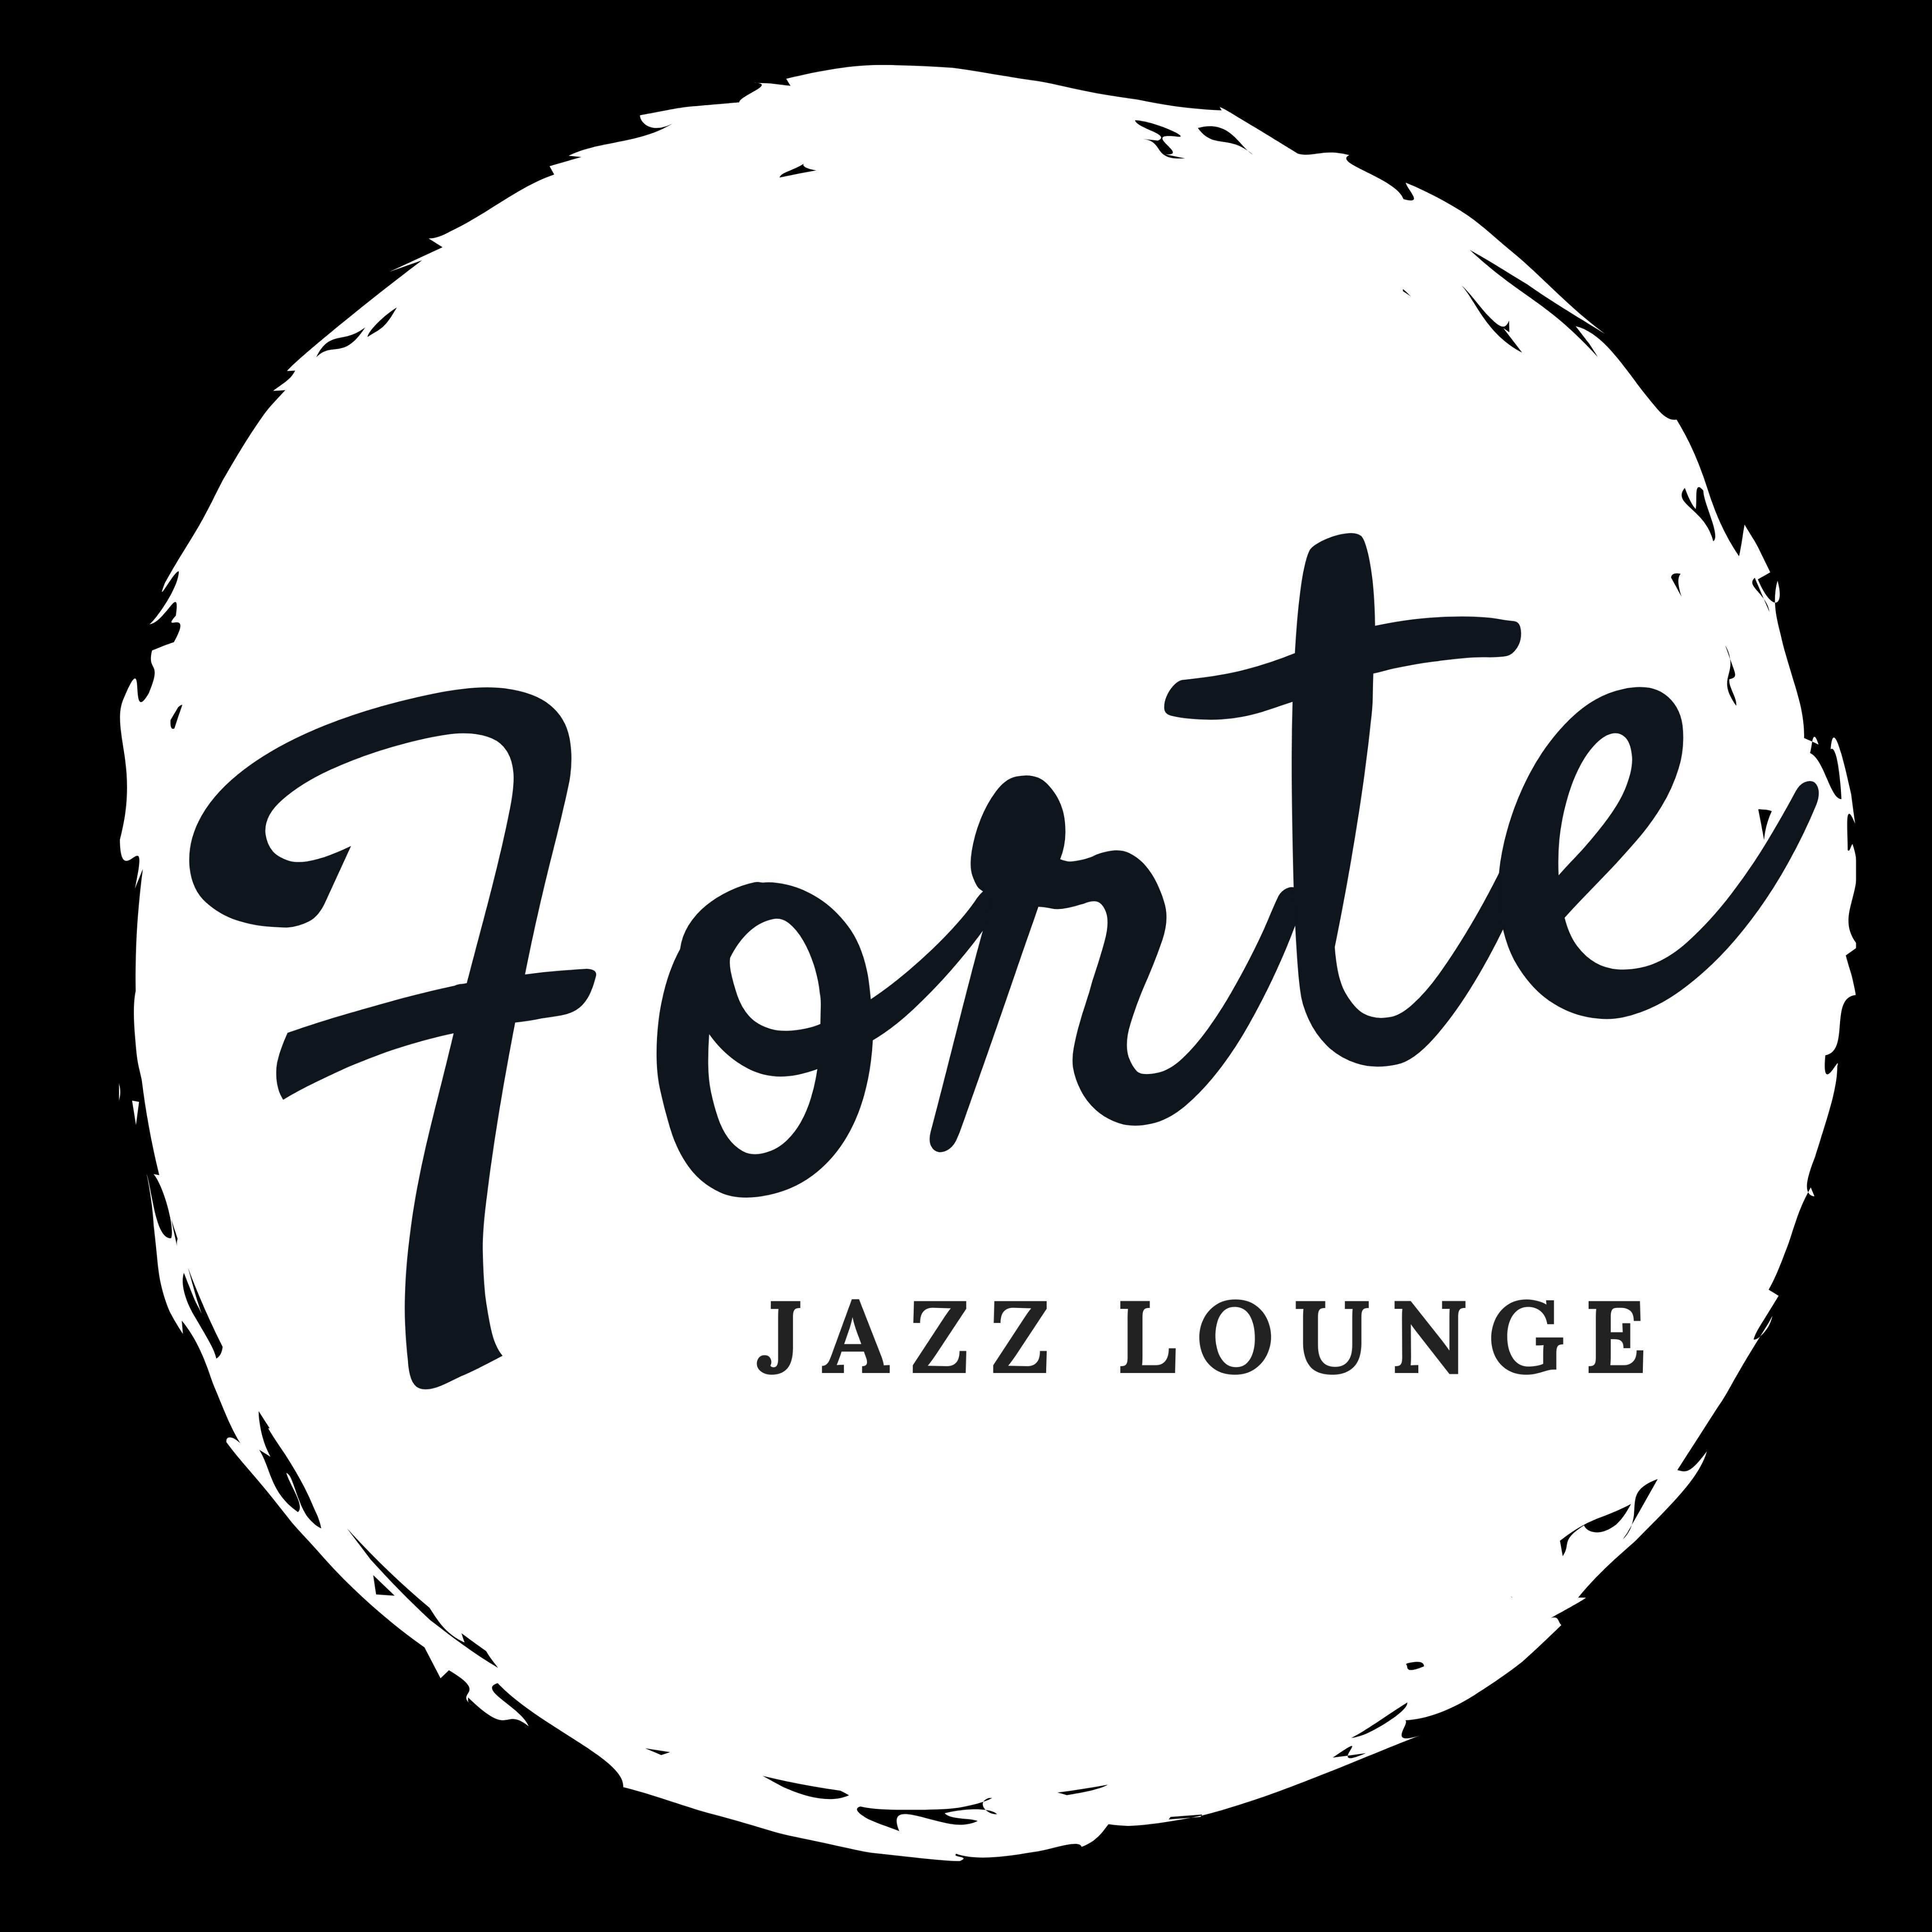 Forte Jazz Lounge